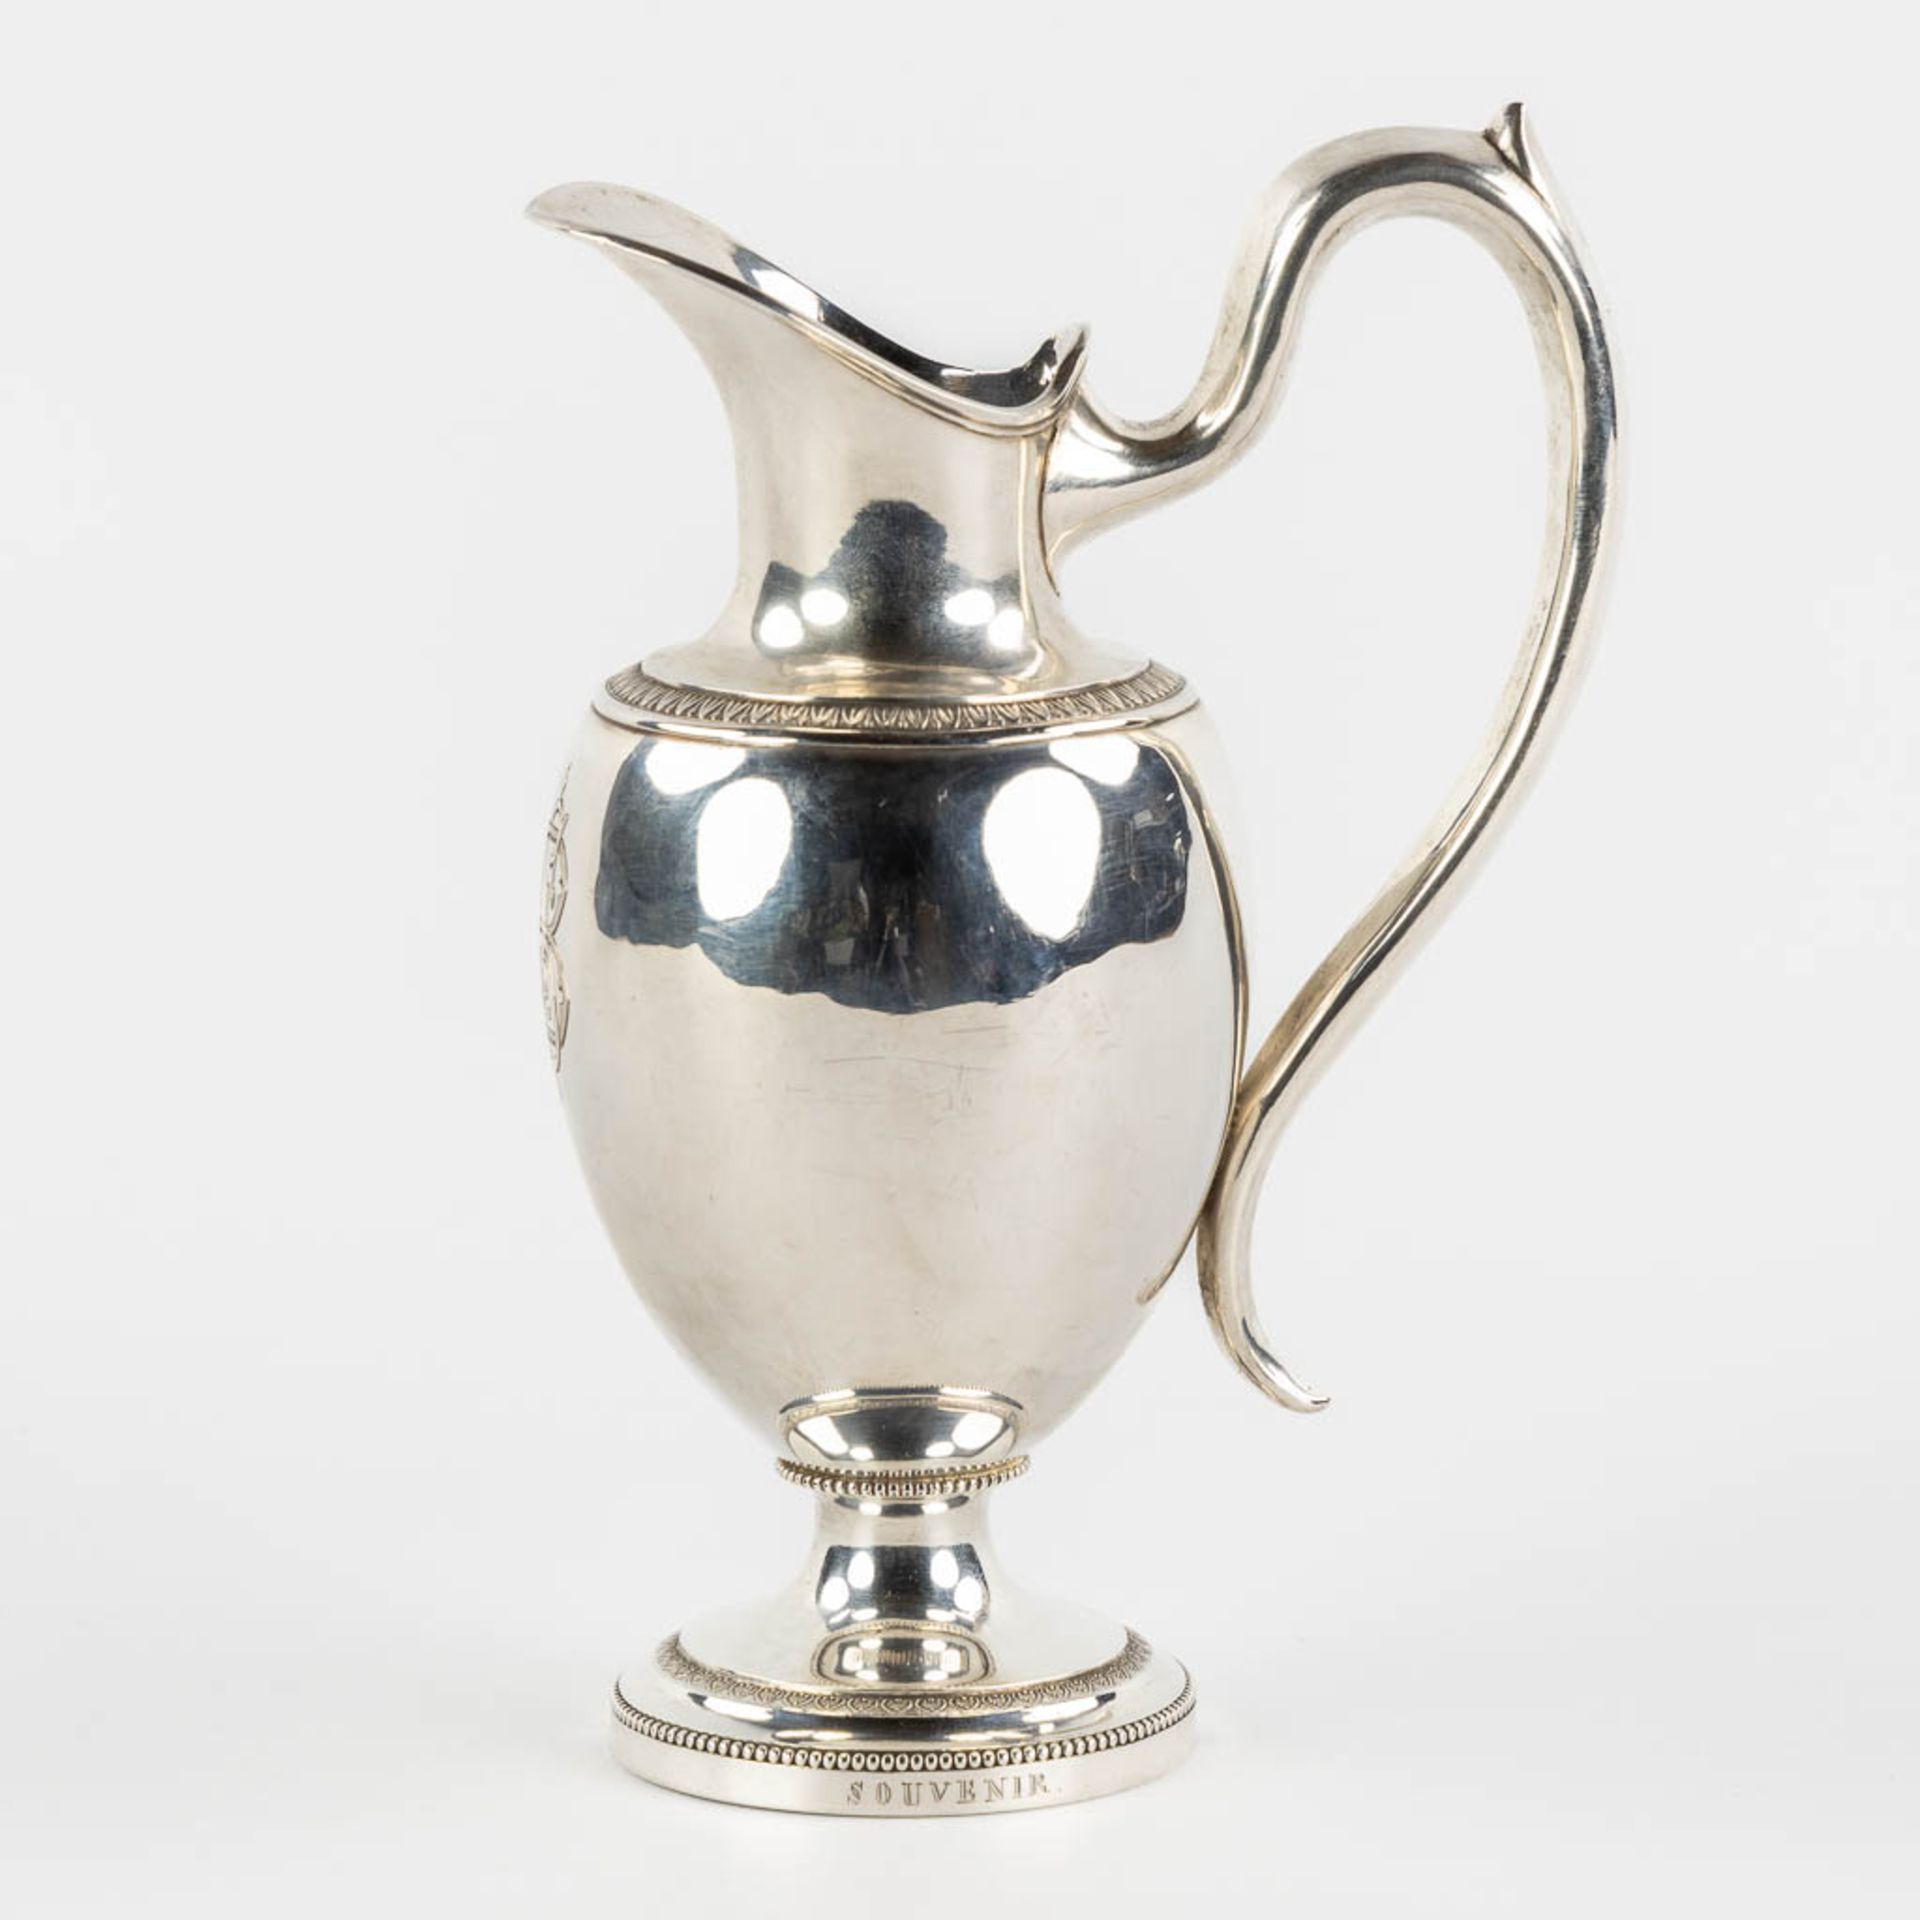 Carolus De Pape (1763-1840) 'Pitcher' silver, Bruges, Belgium, circa 1832 and 1840. (L:8 x W:13 x H: